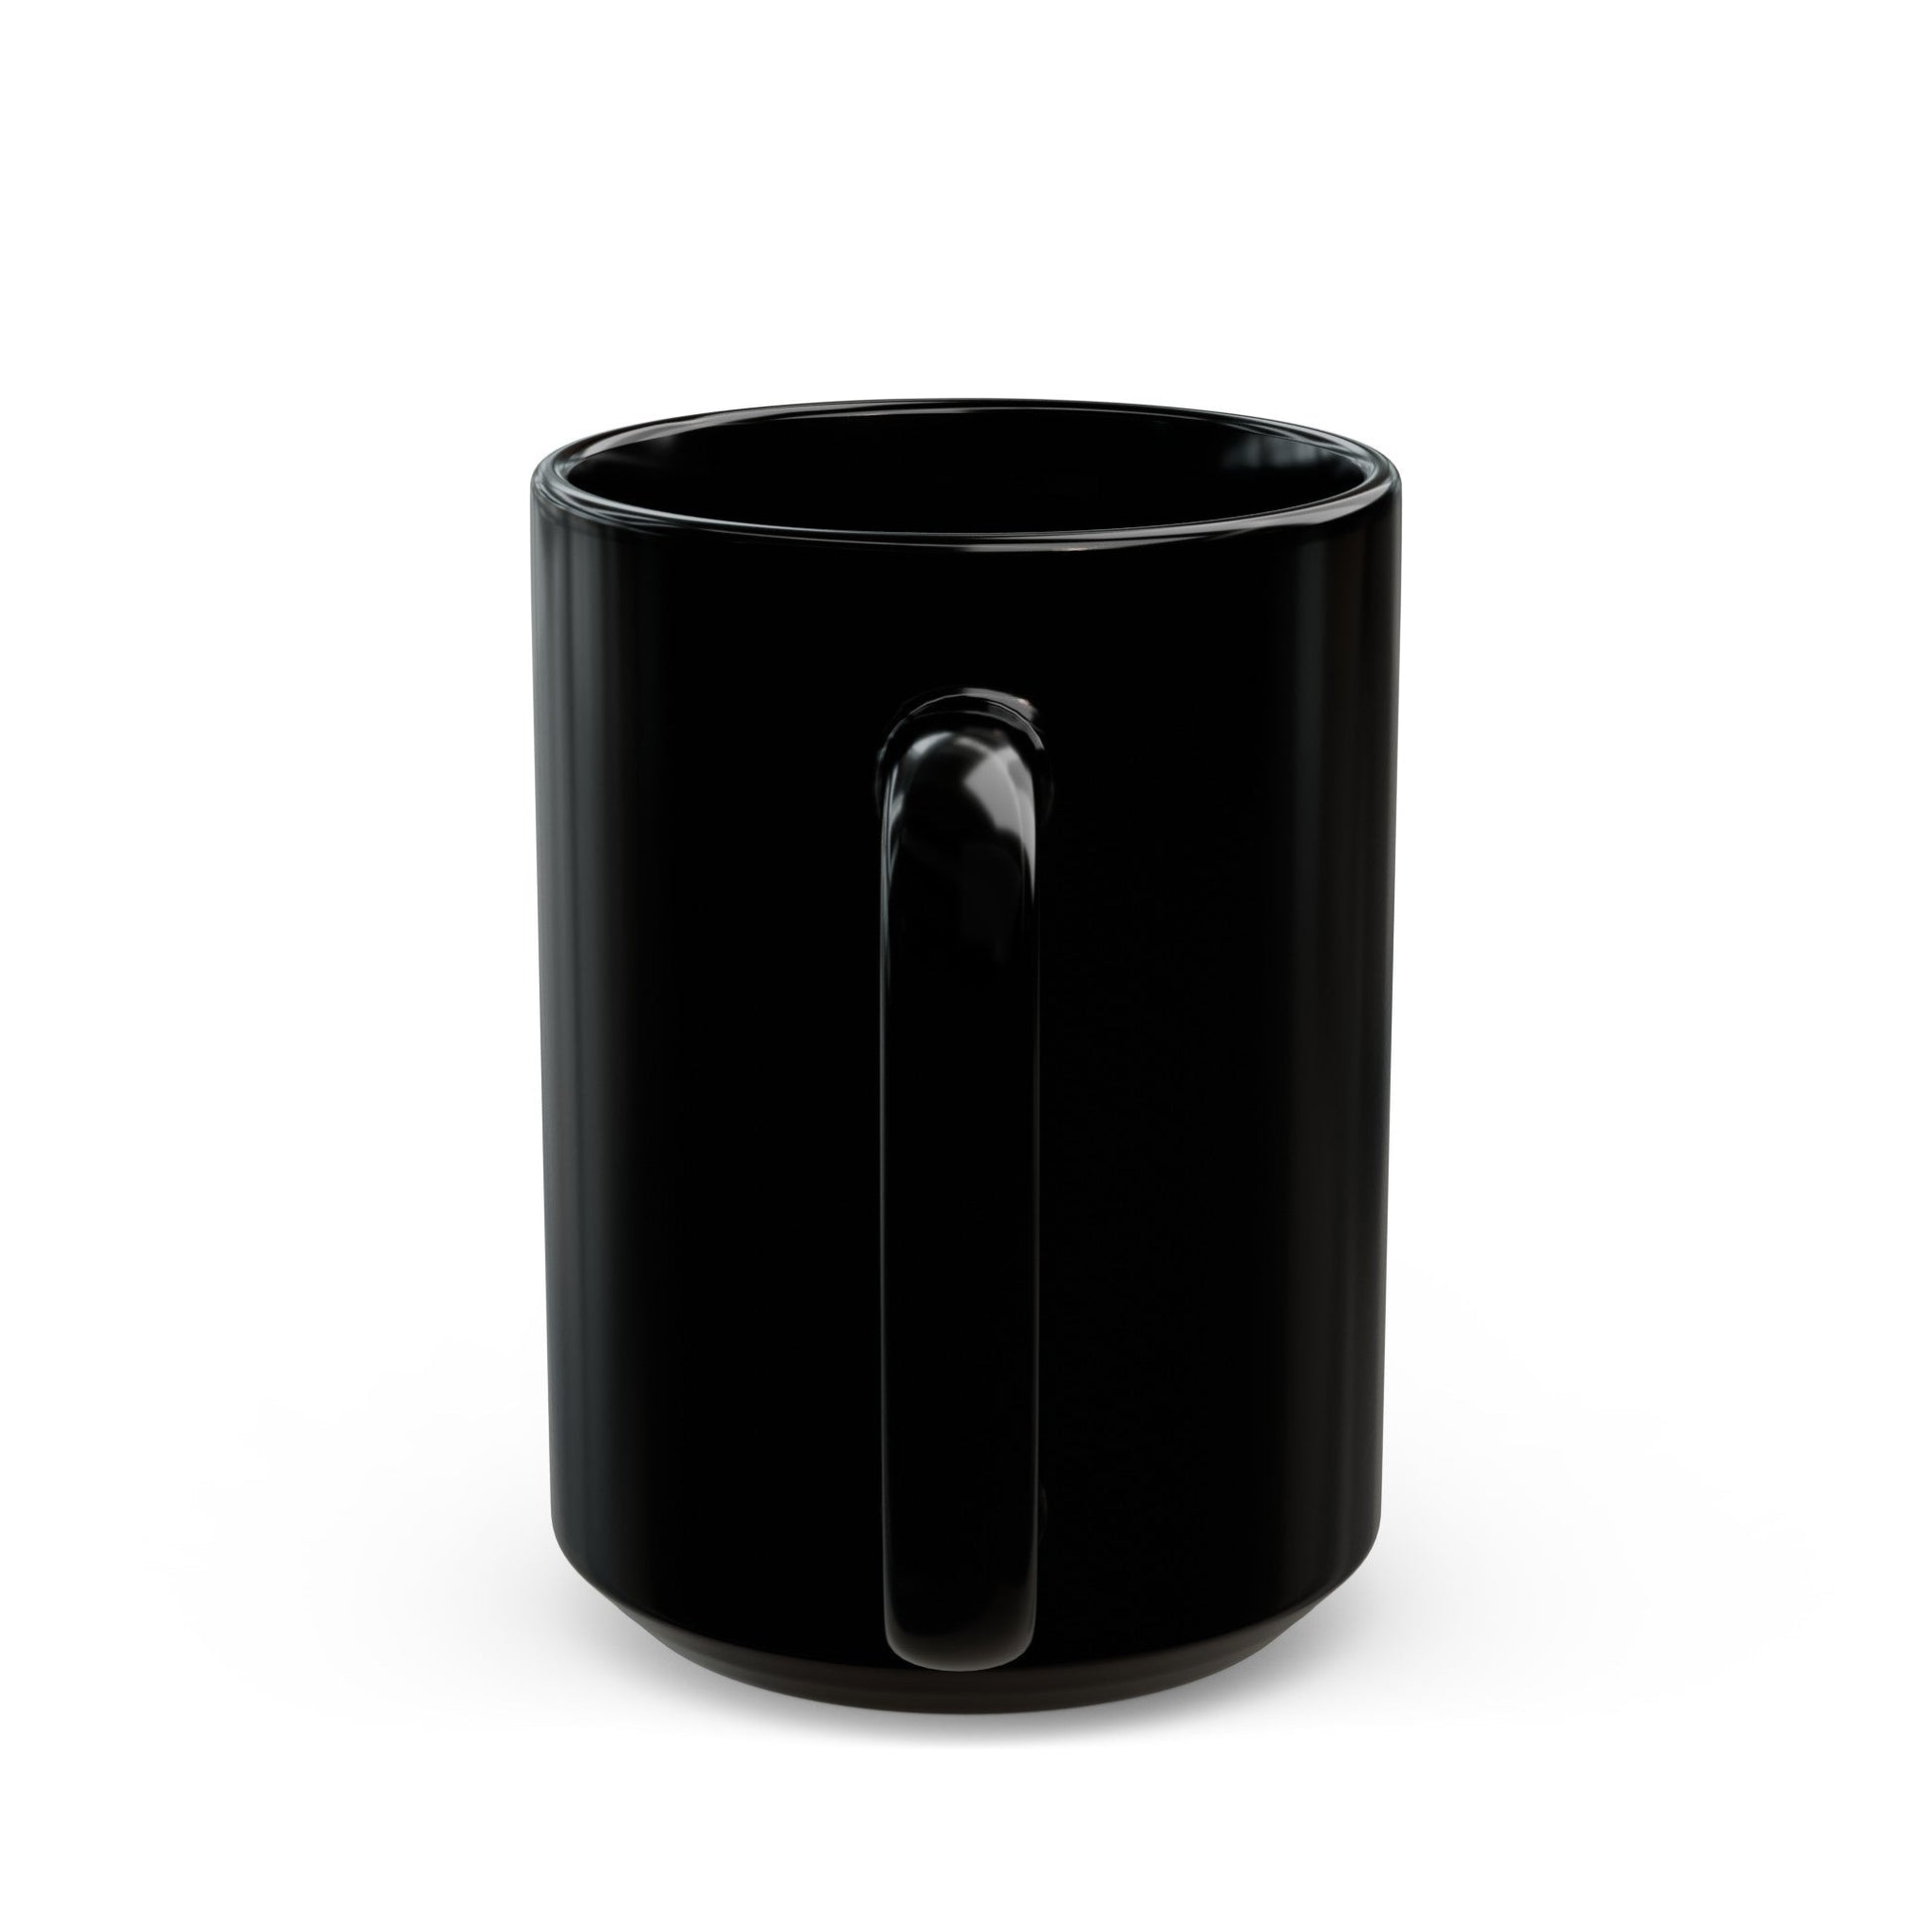 VFA 34 (U.S. Navy) Black Coffee Mug-The Sticker Space